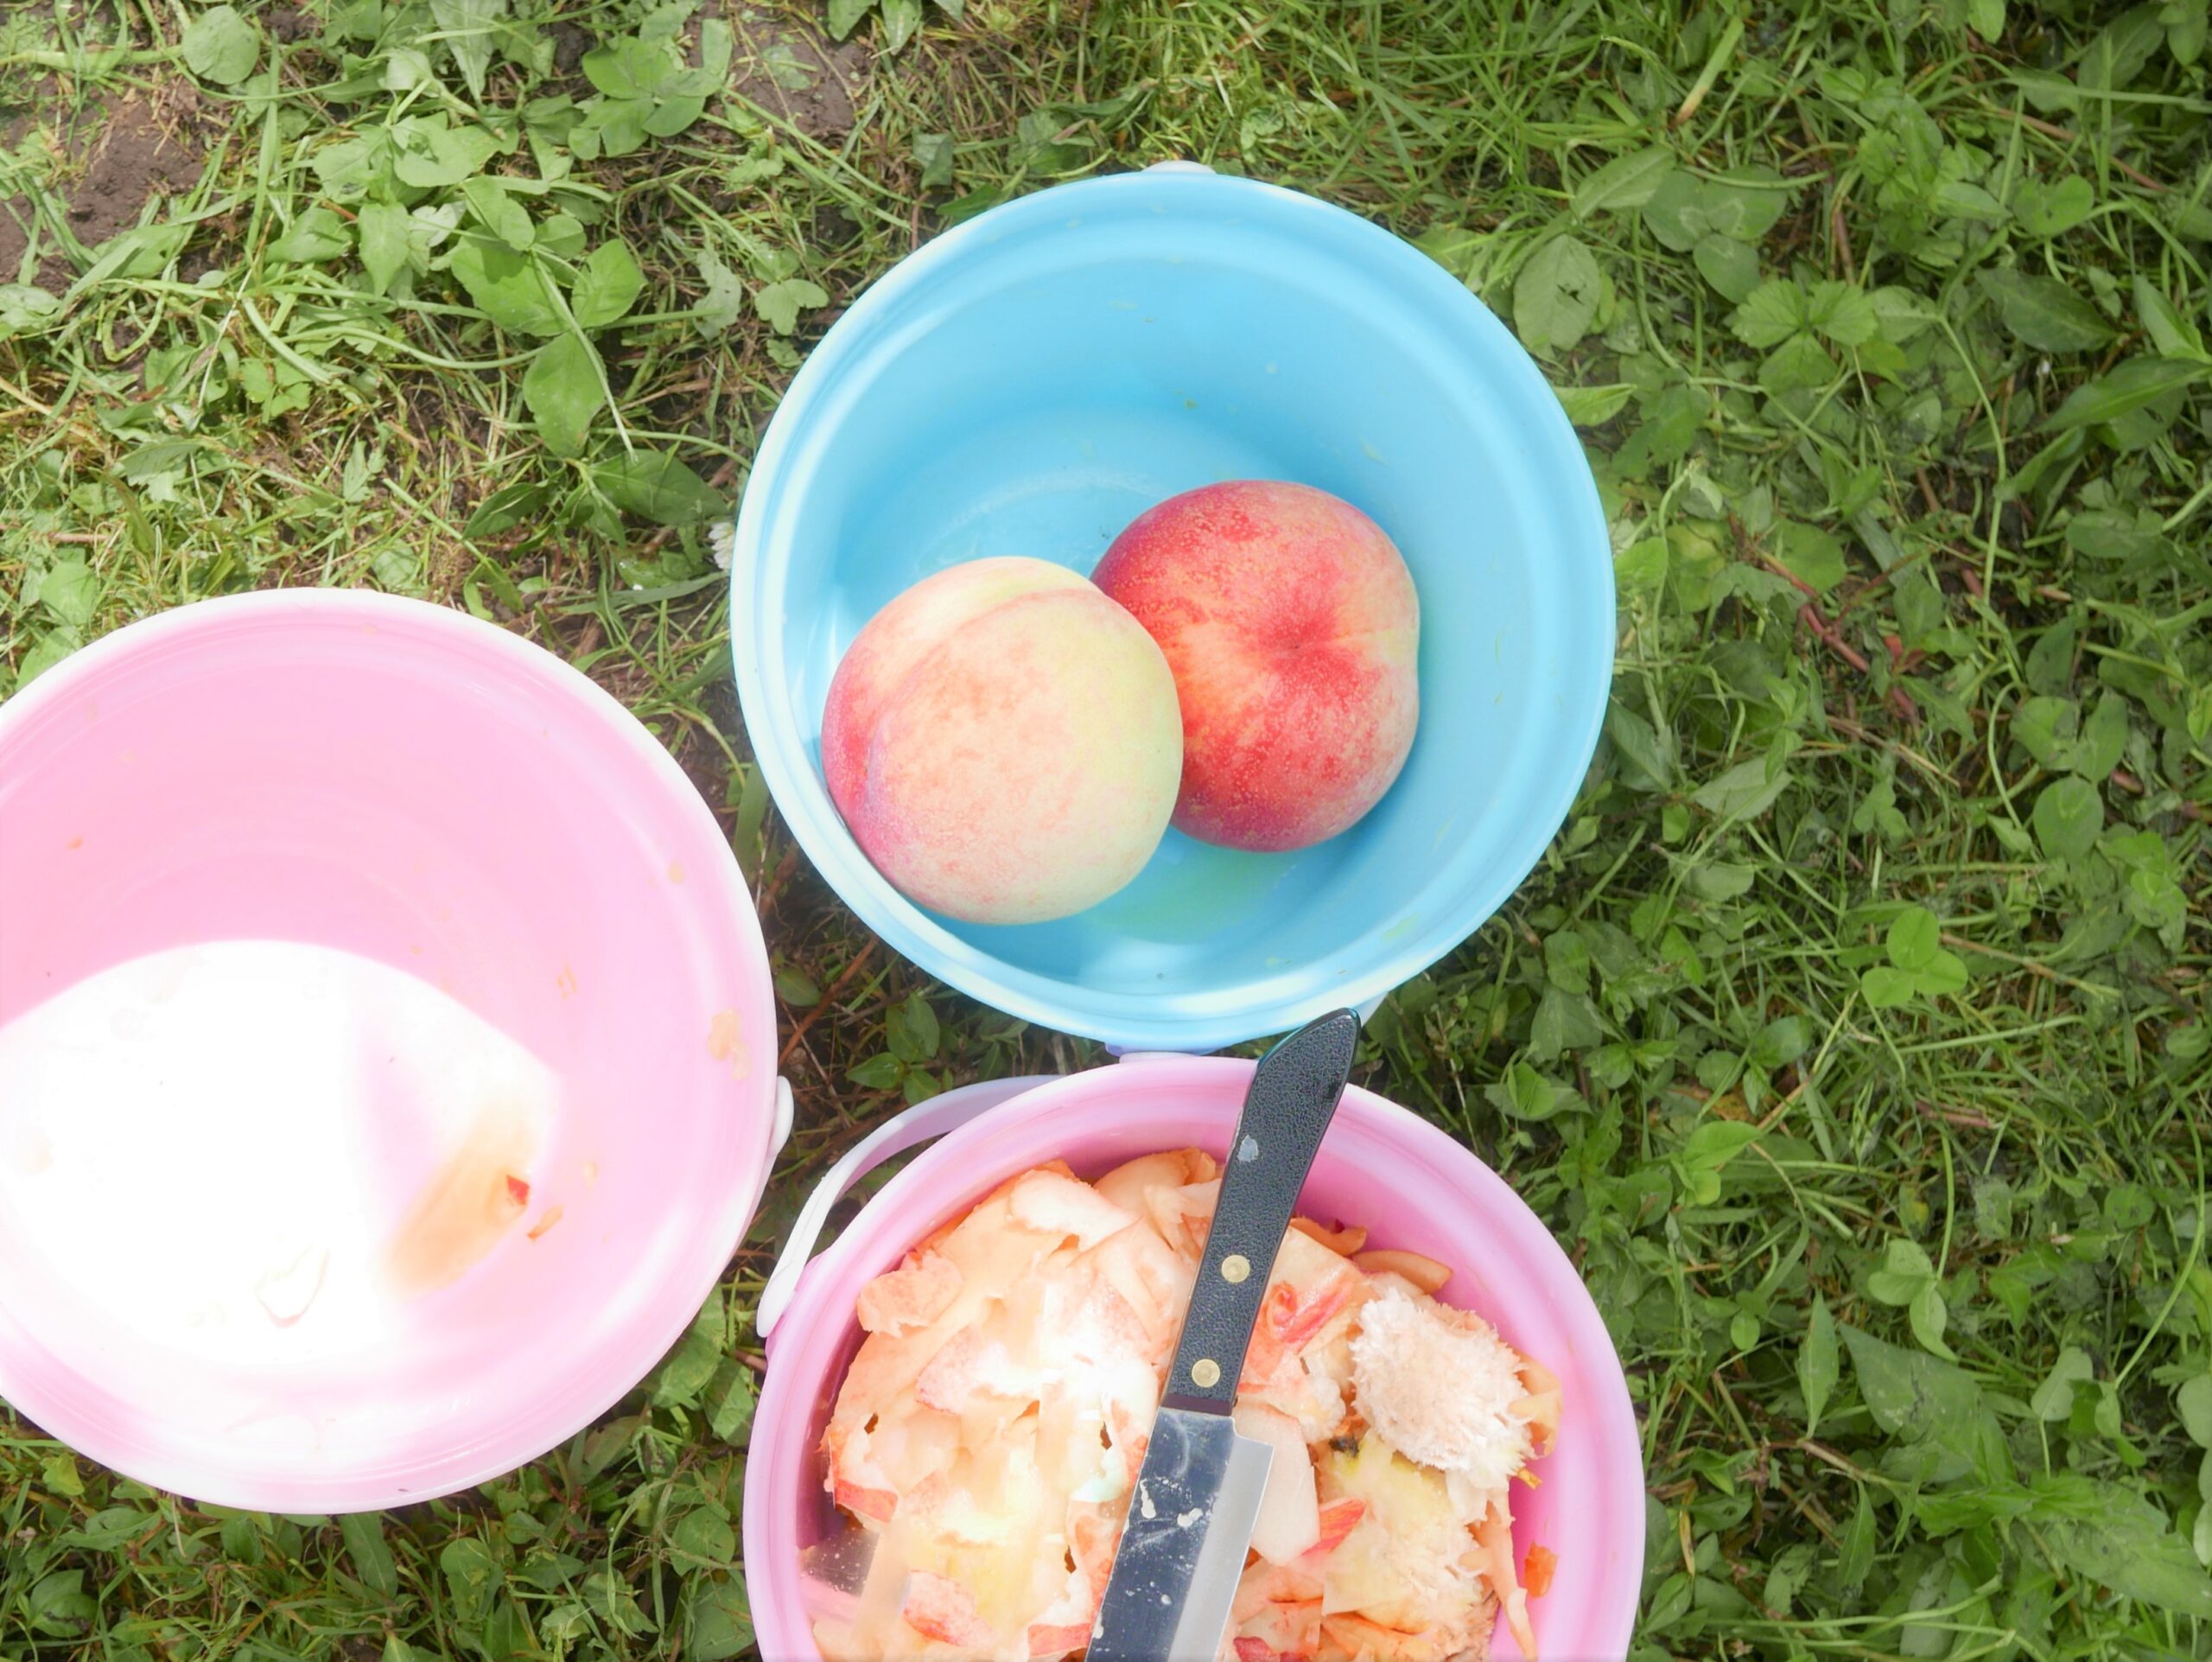 岡山 大原観光果樹園で桃狩り 時間無制限 もぎとり食べ放題 21年7月 子連れ旅行 Bonのおでかけブログ